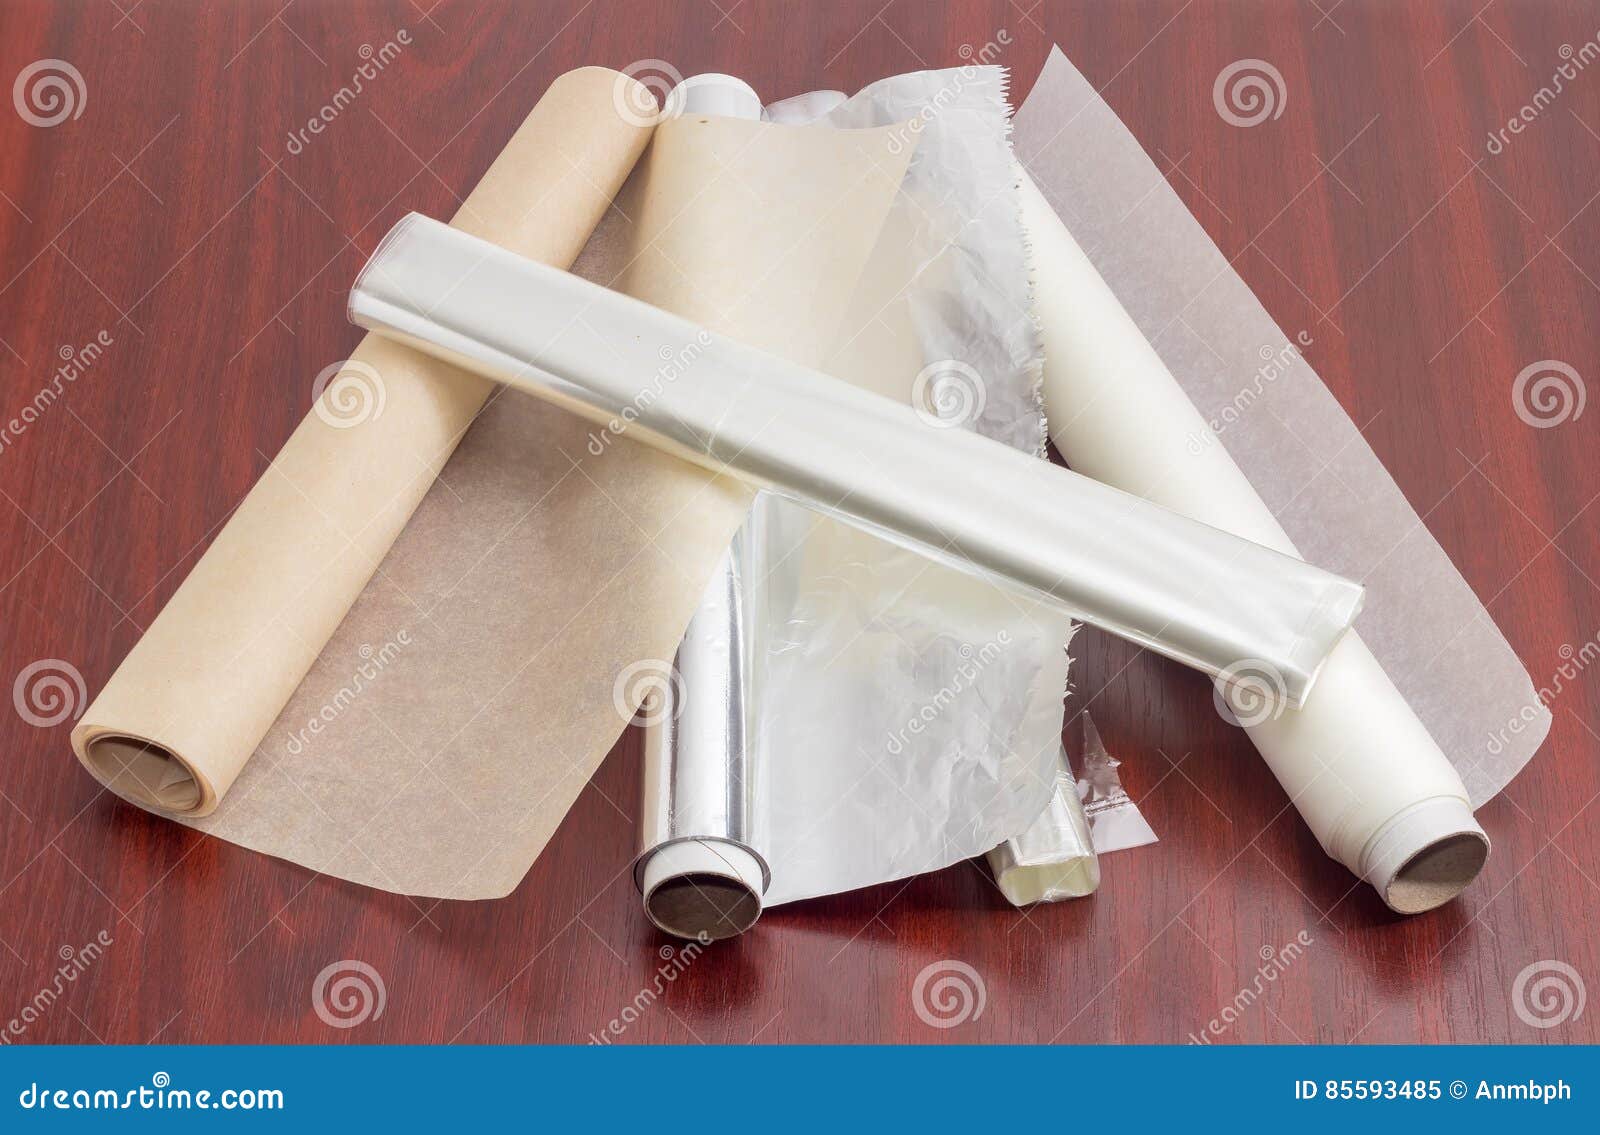 Можно ли пергаментную бумагу заменить бумагой. Пергаментная бумага. Пергаментная бумага для строительства. Колбаса в пергаментной бумаге. Пергаментная бумага фольга.